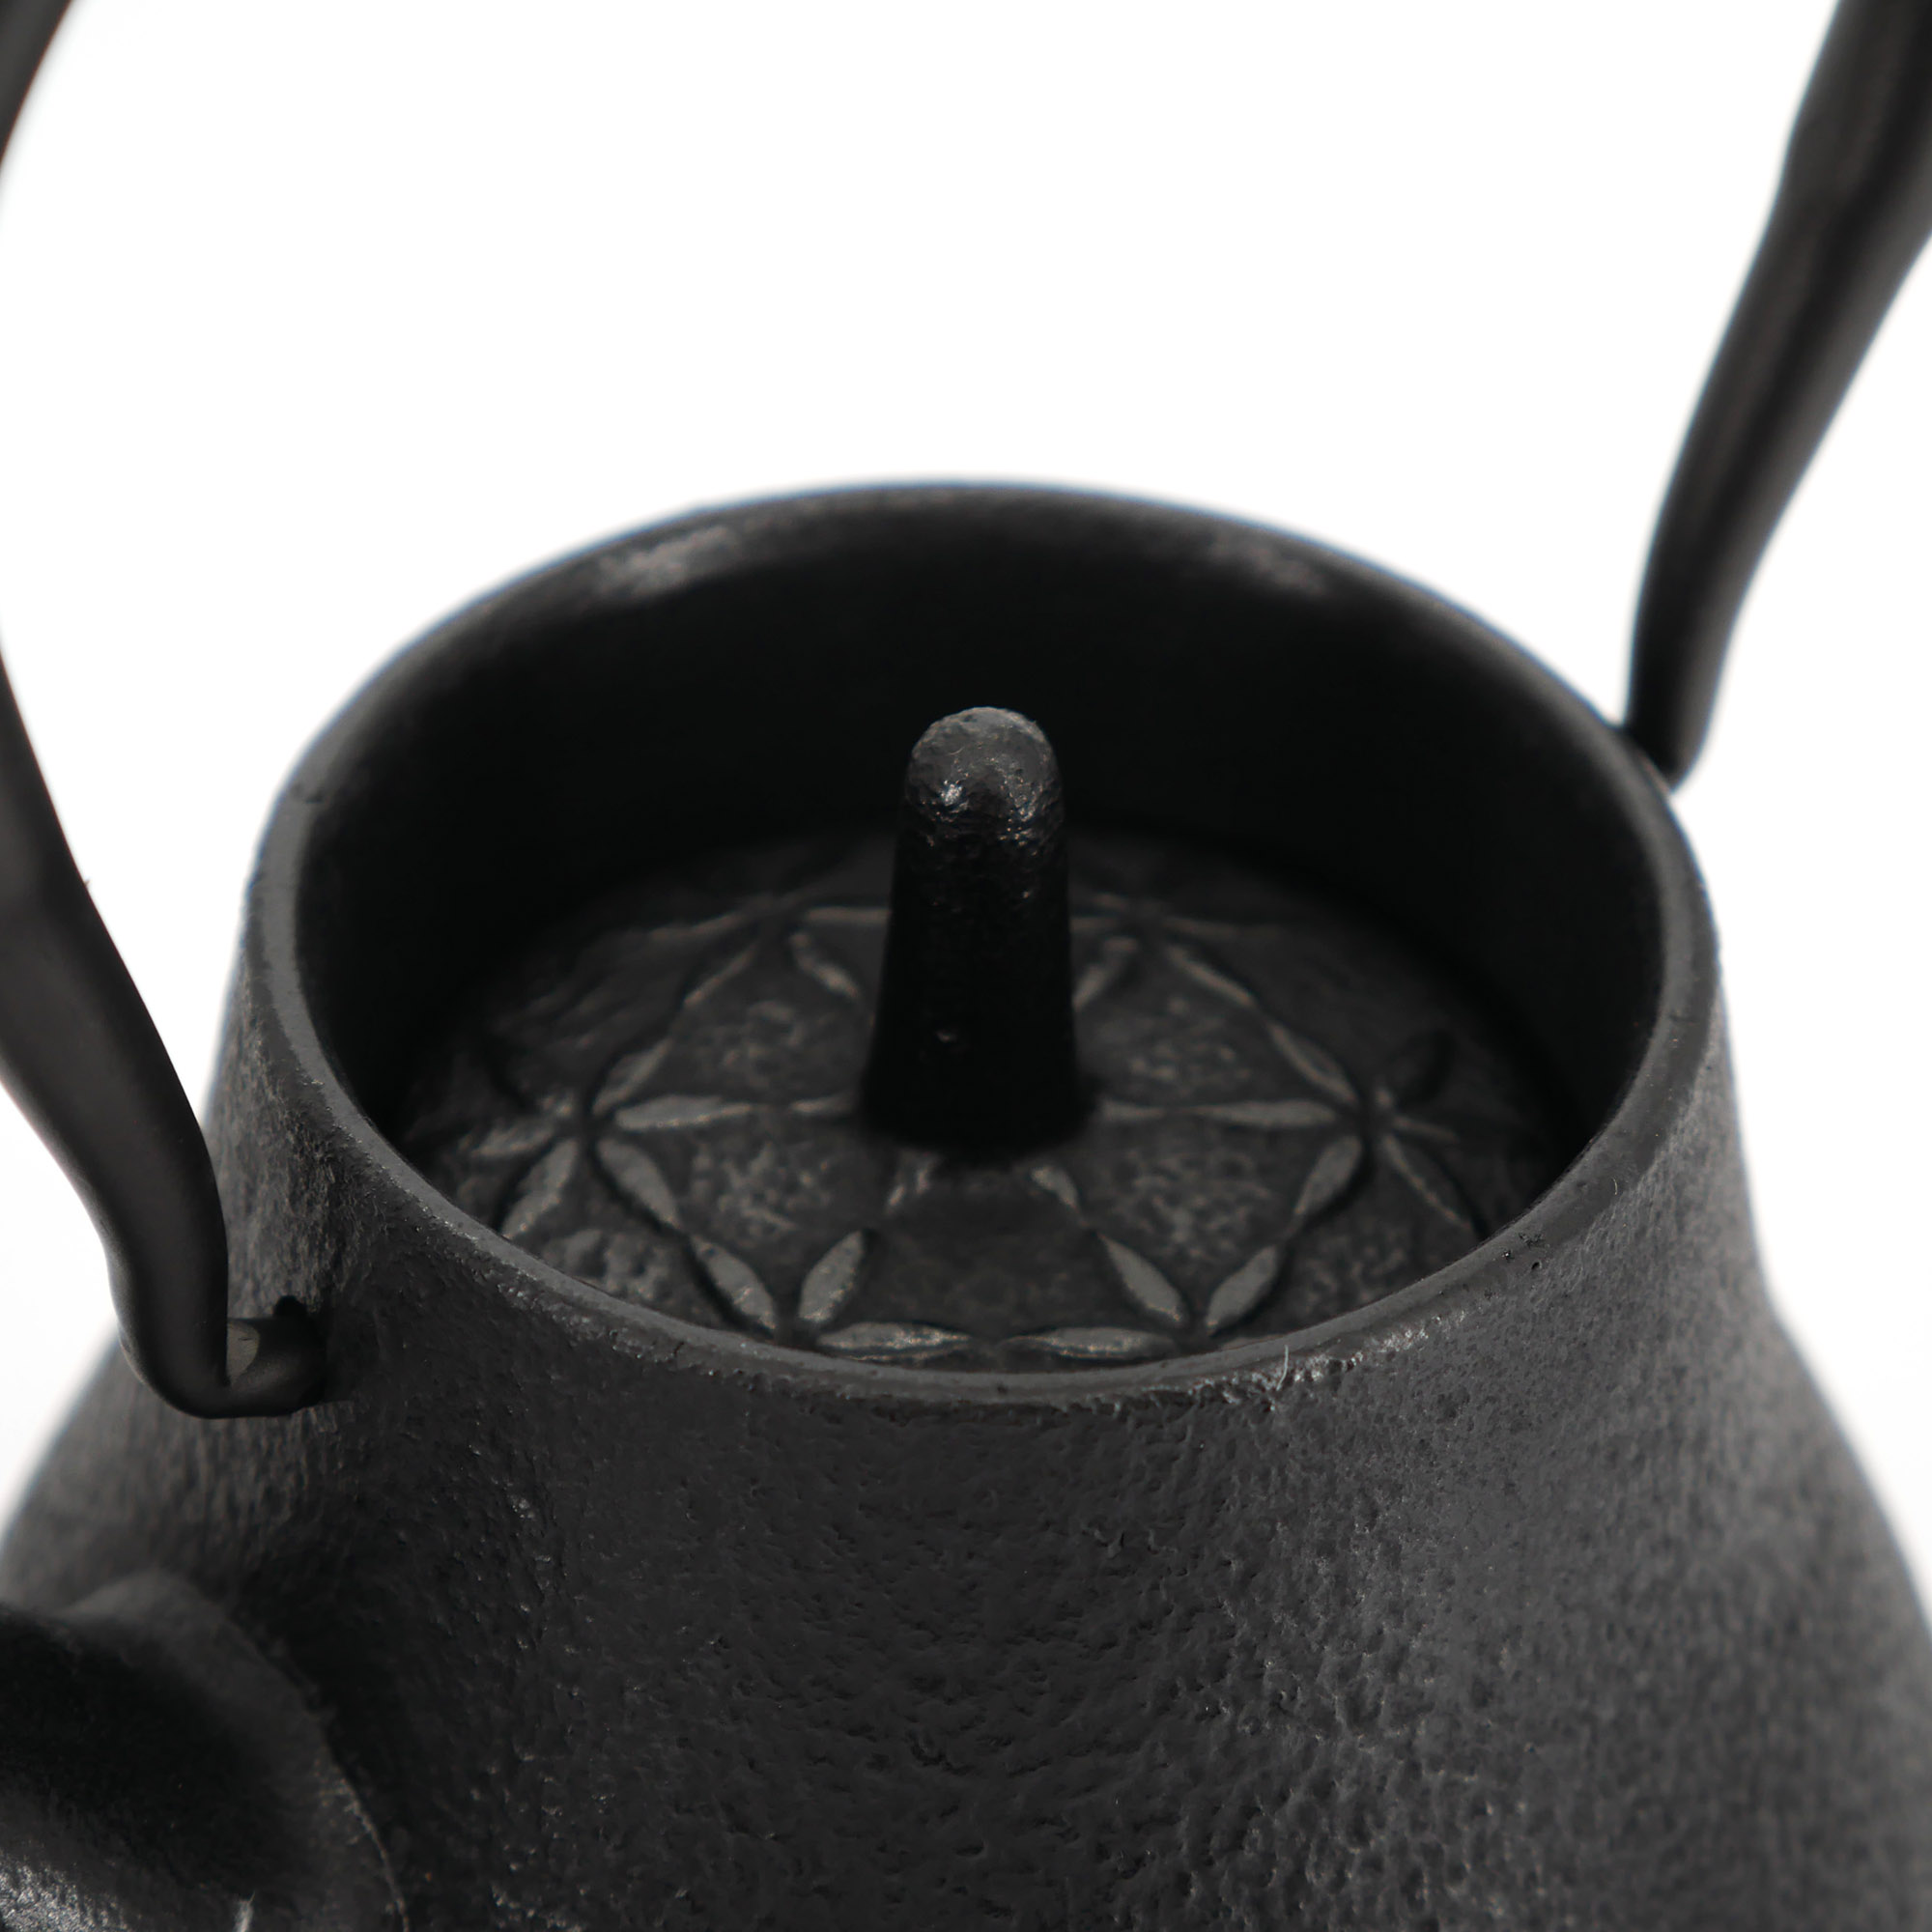 Tetera japonesa de hierro fundido esmaltada negra, ROJI ITOME, 1,2 lt